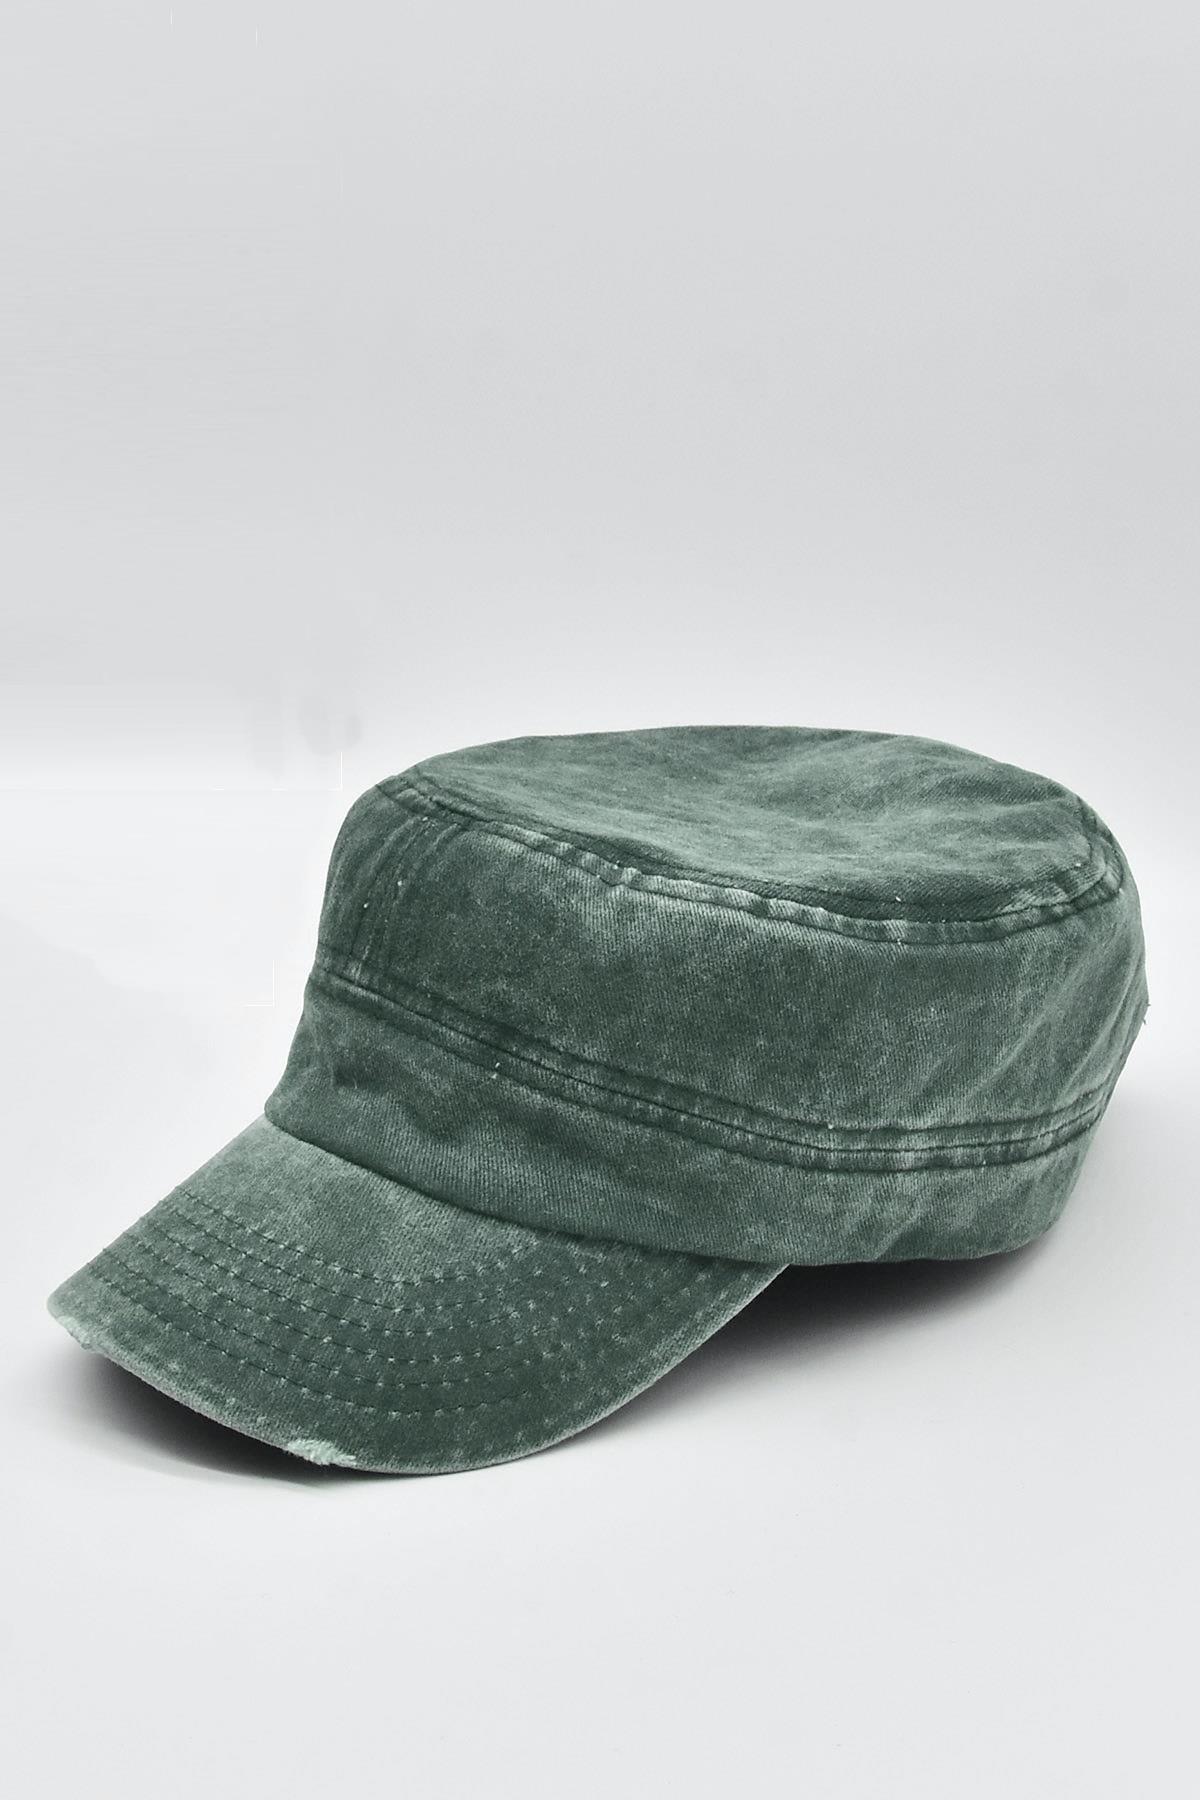 Külah Erkek Castro Şapka Kasket Eskitme Kep-Yeşil KLH6690